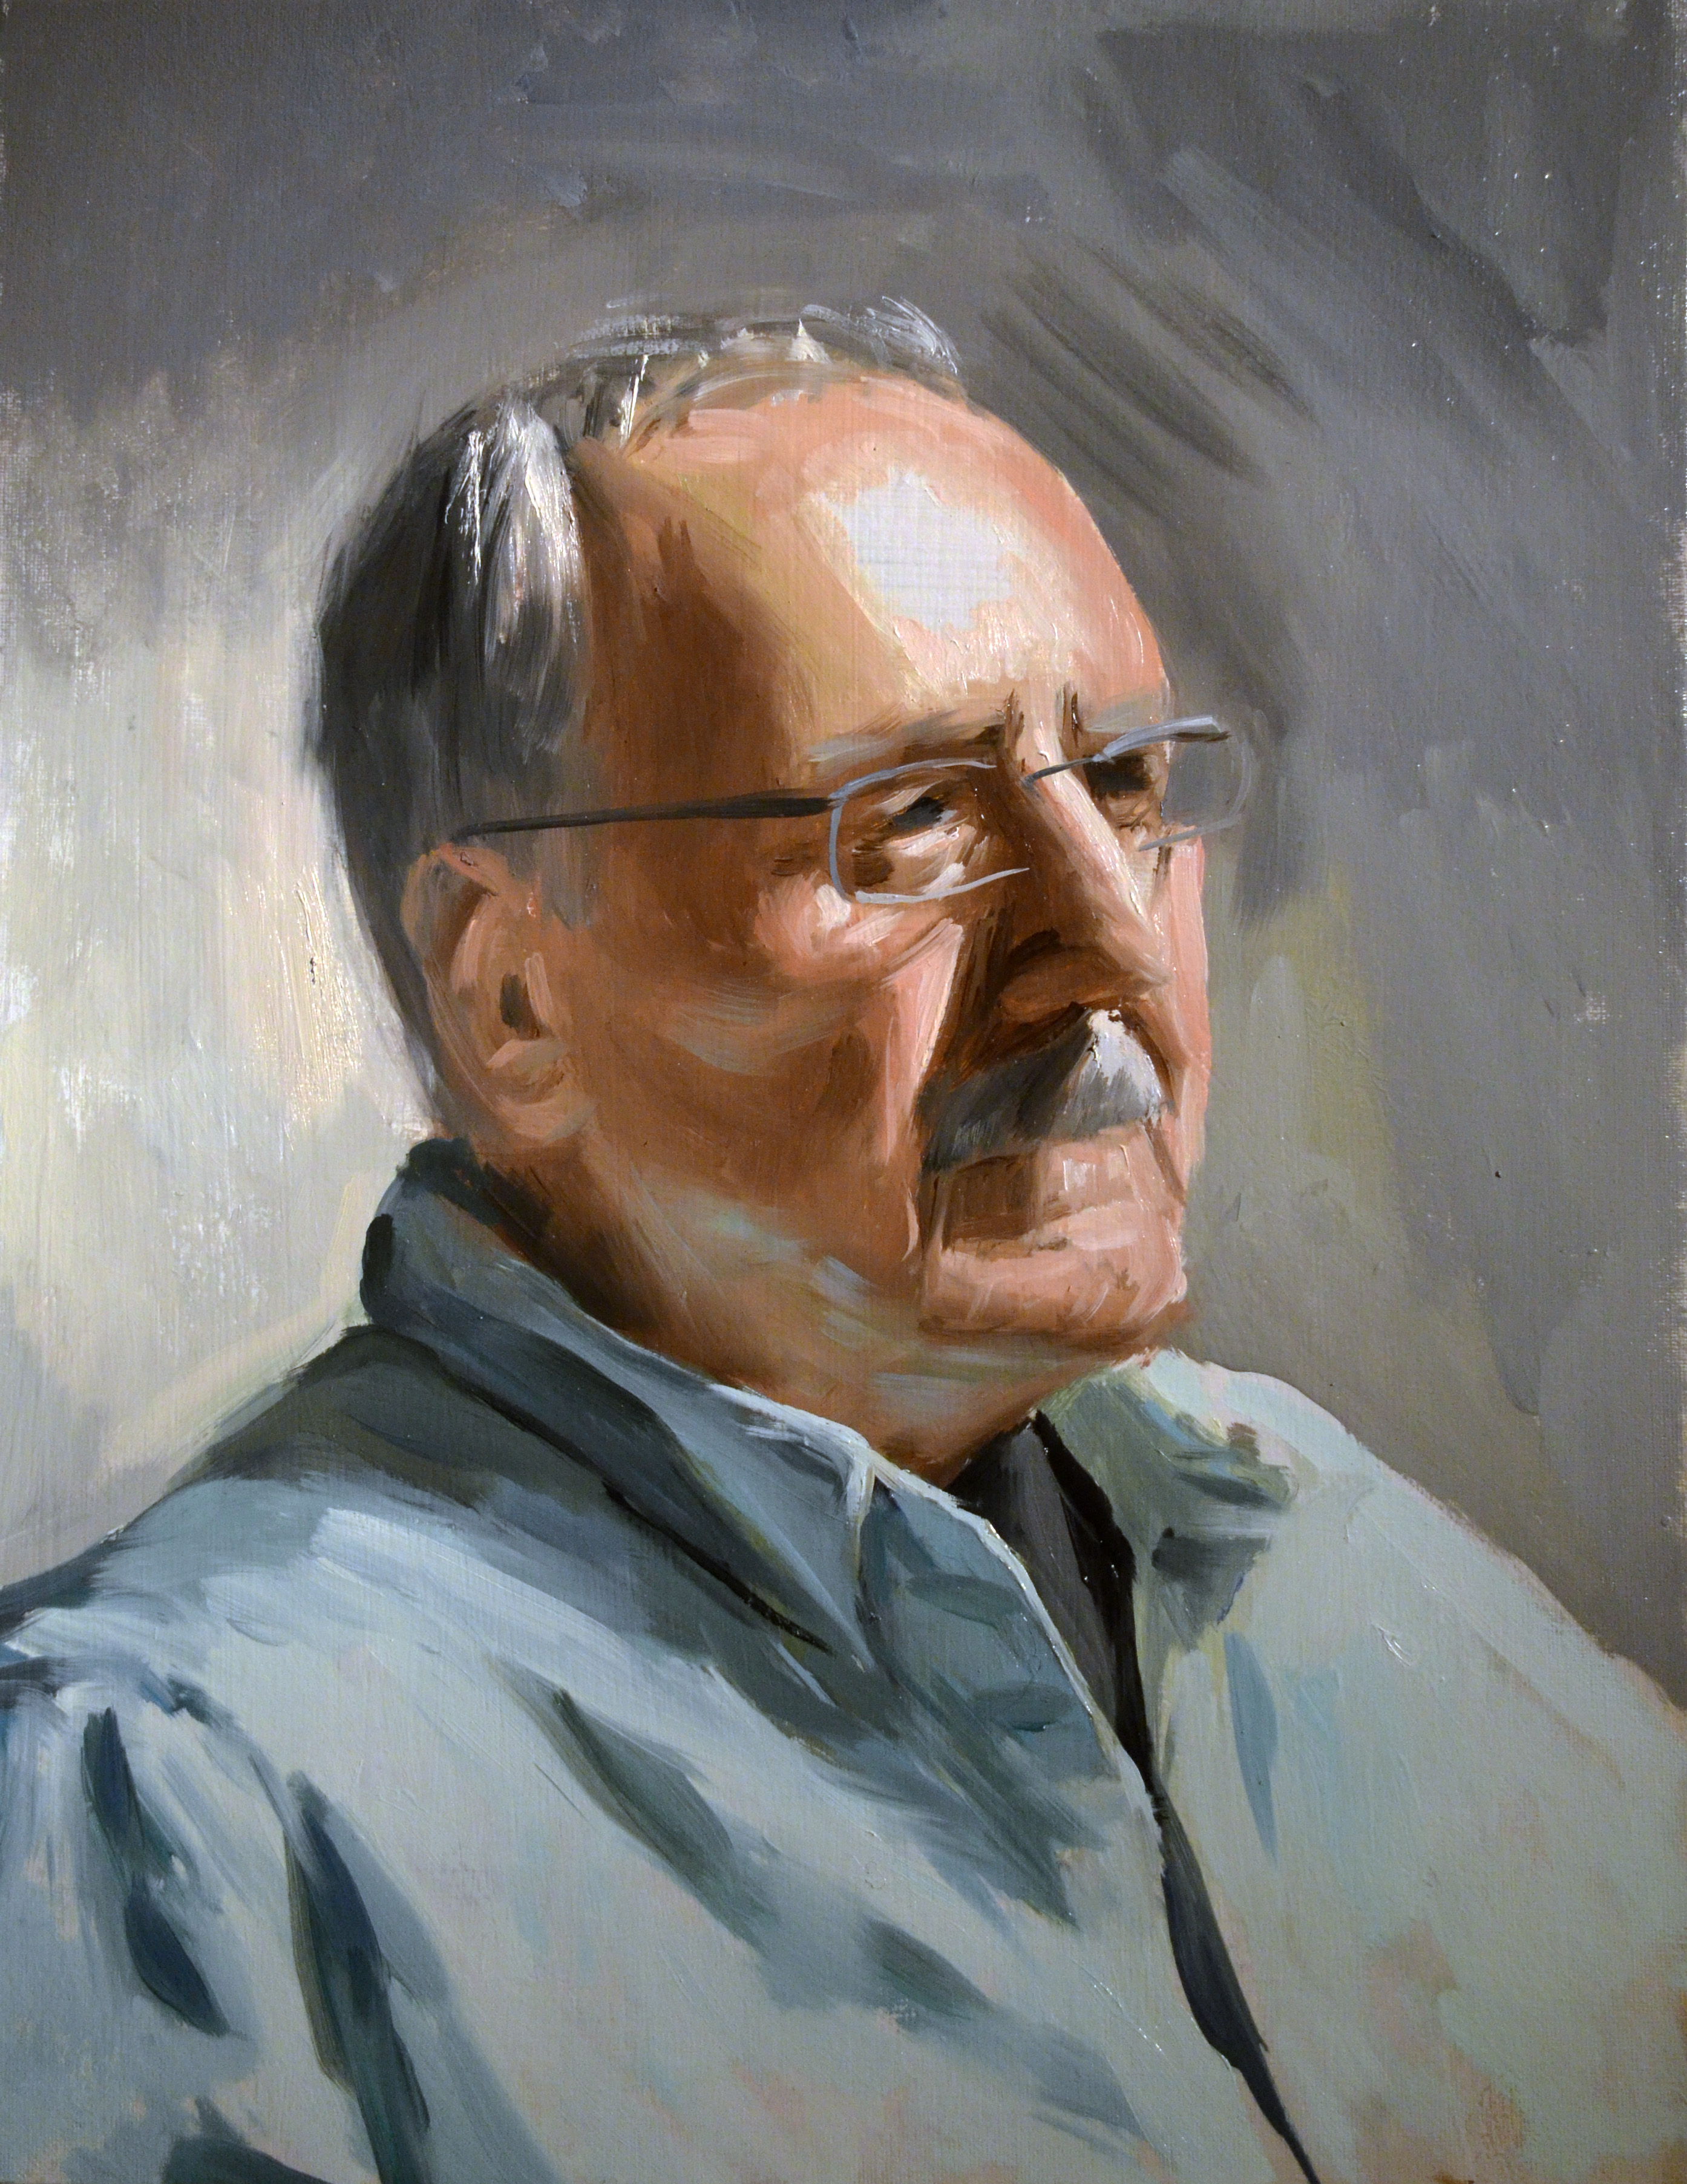 Paul, 14" x 18", oil on canvas, 2012.